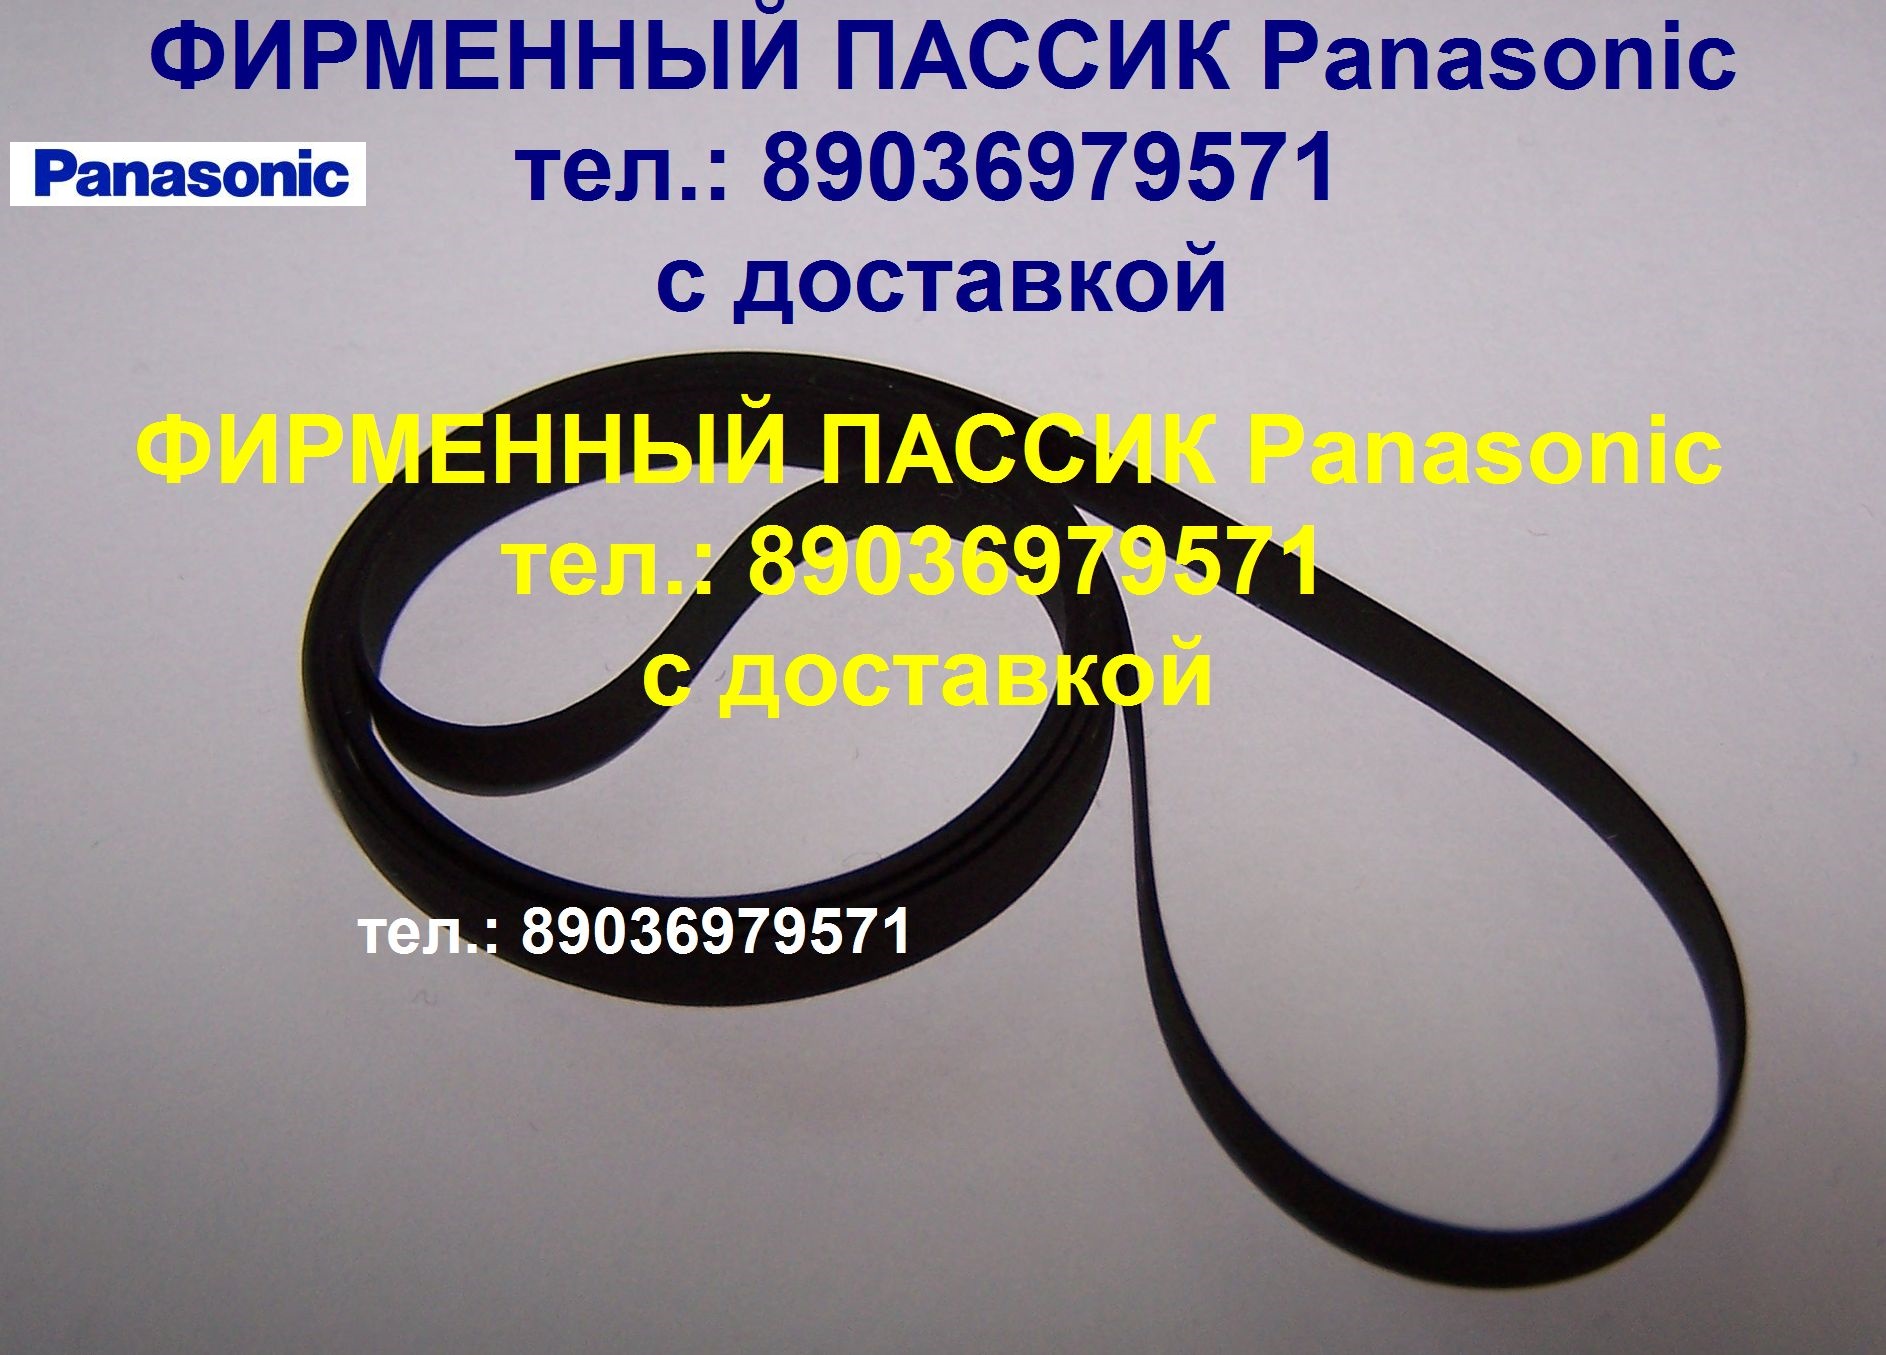 Фирменный пассик для Panasonic SG-V05 ремень пасик Panasonic SG-V05 пассик Панасоник SGV05 в городе Москва, фото 1, телефон продавца: +7 (903) 697-95-71